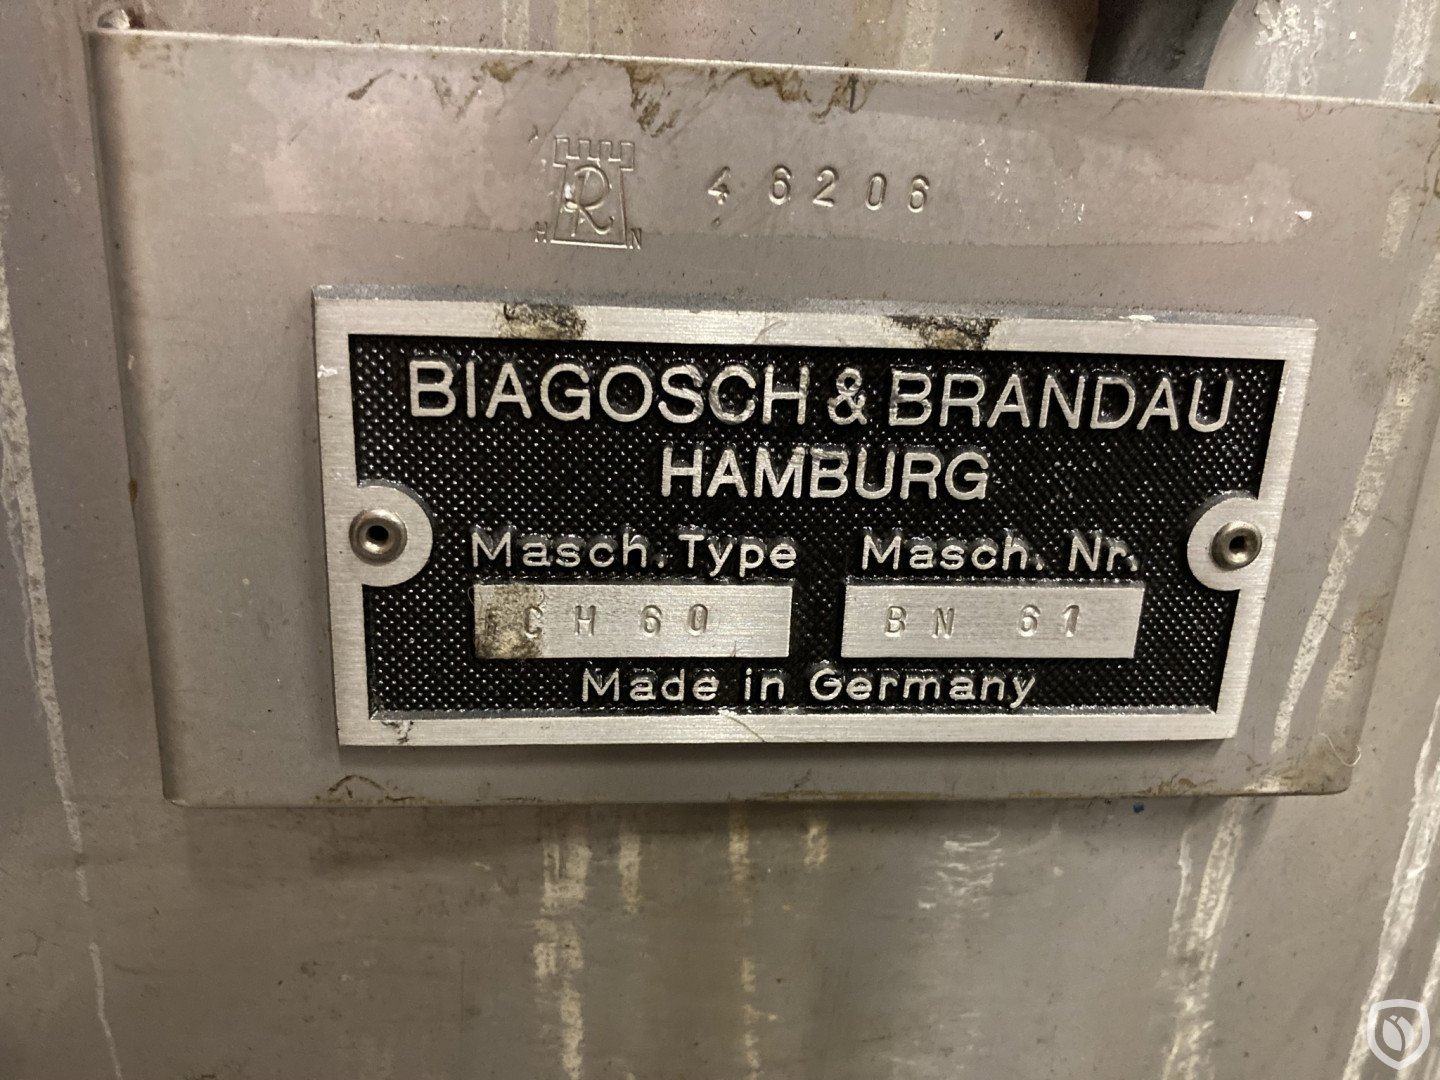 Biagosch & Brandau CH 60